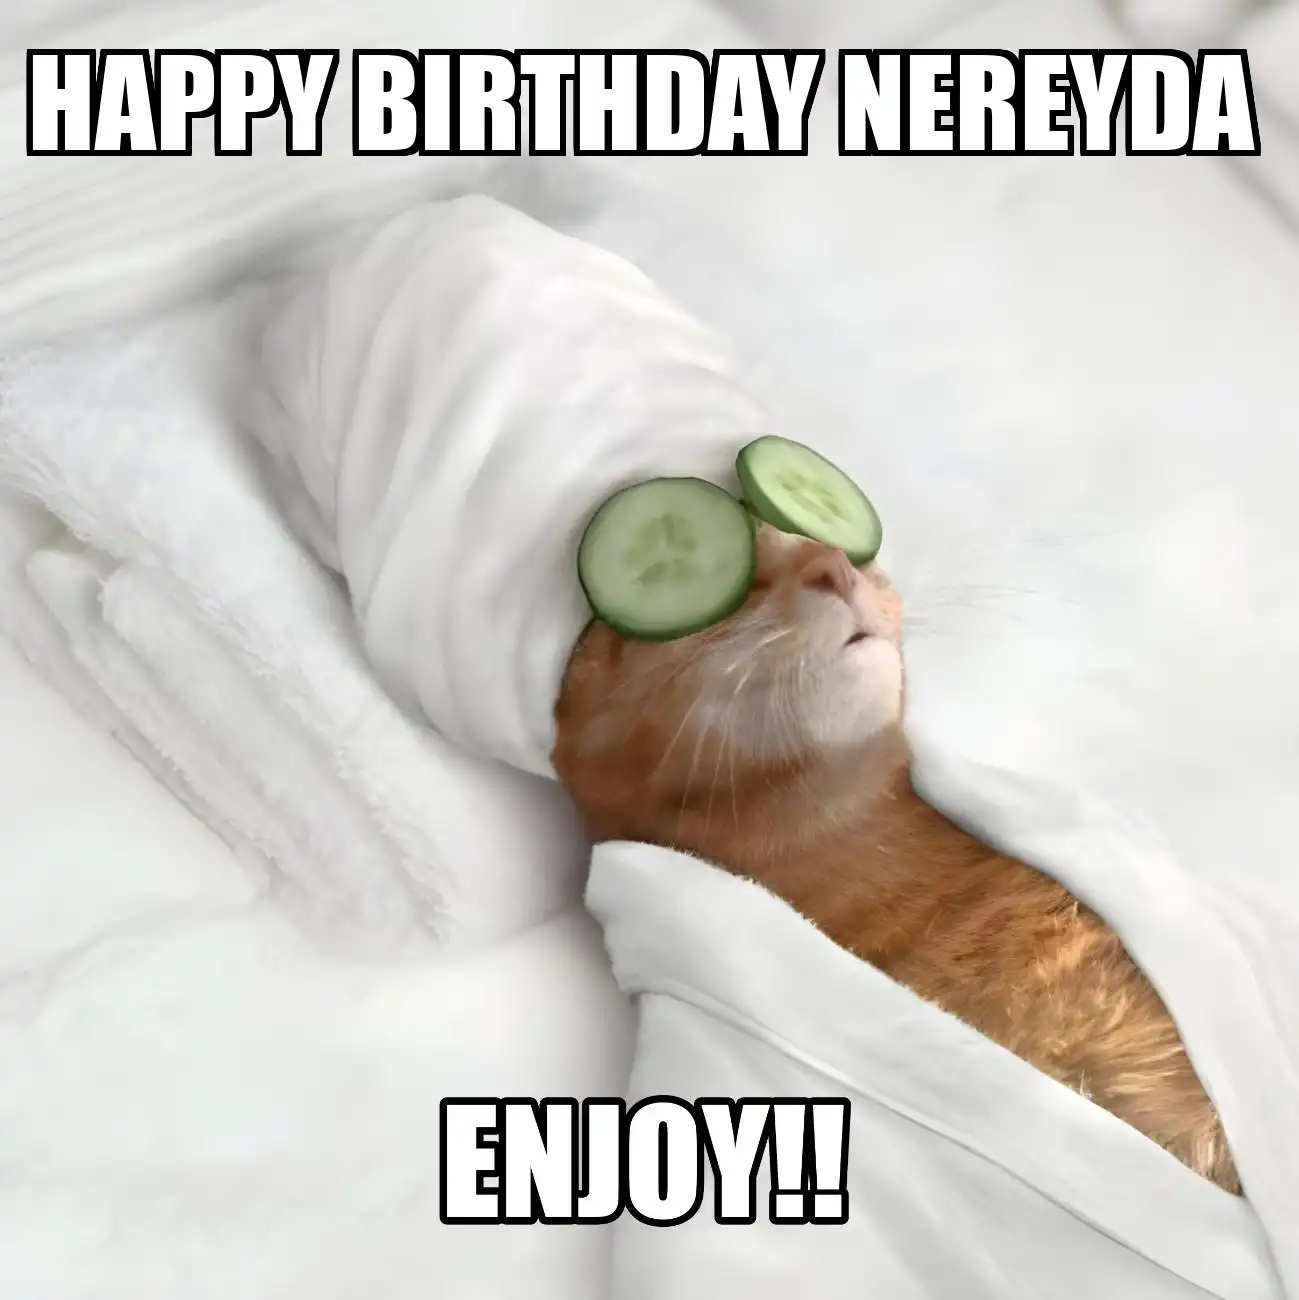 Happy Birthday Nereyda Enjoy Cat Meme